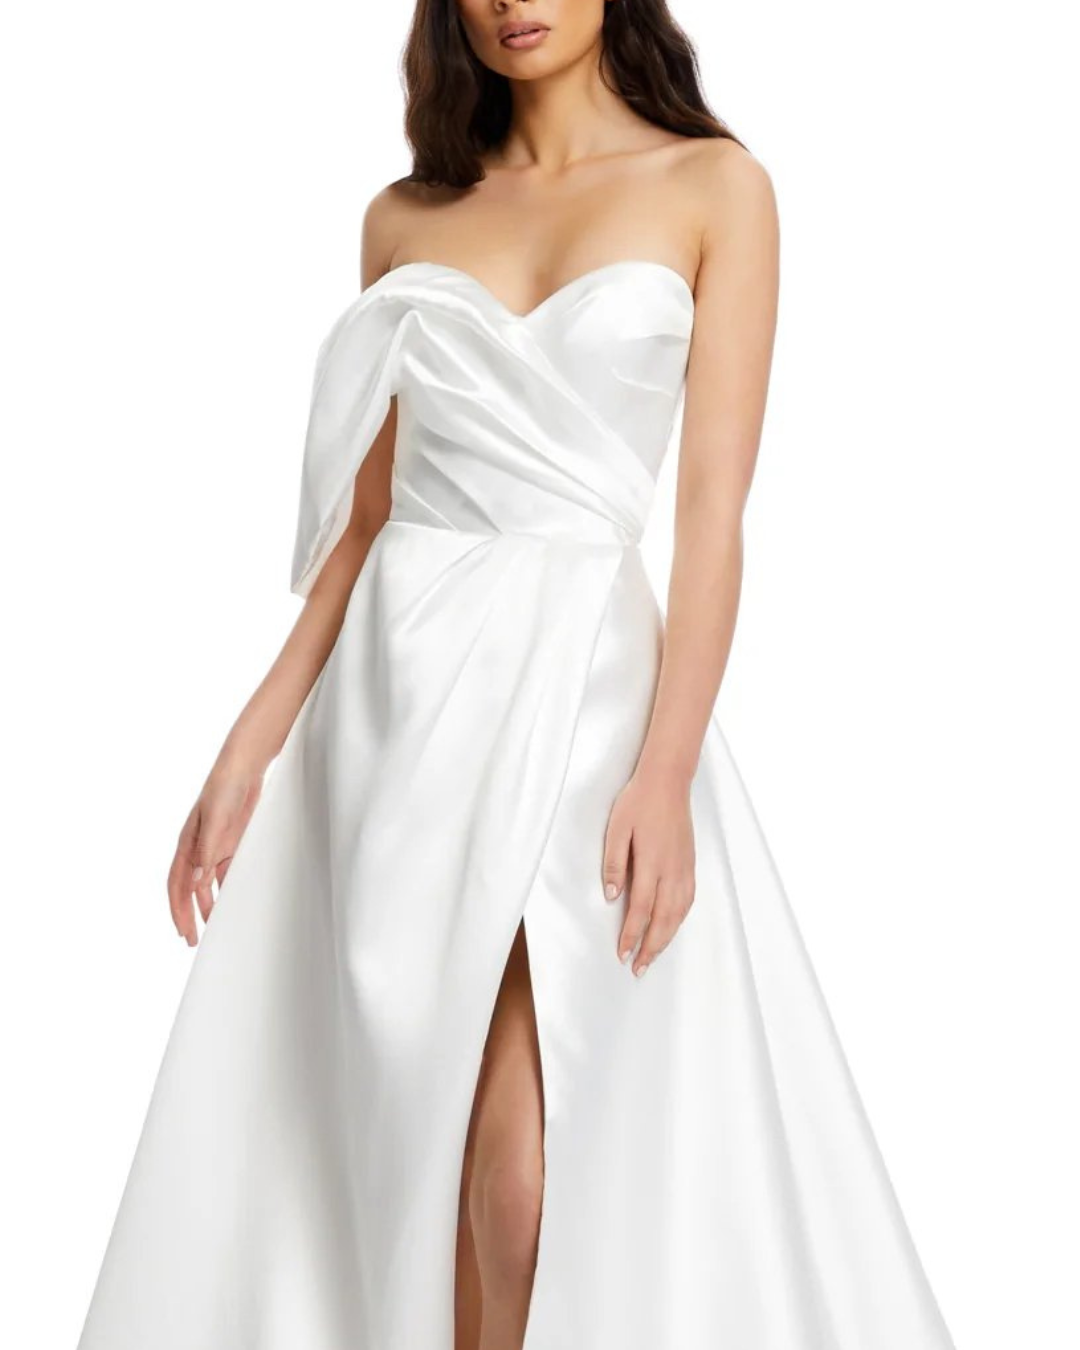 Close View of Model Wearing Banks Modern Wedding Dress